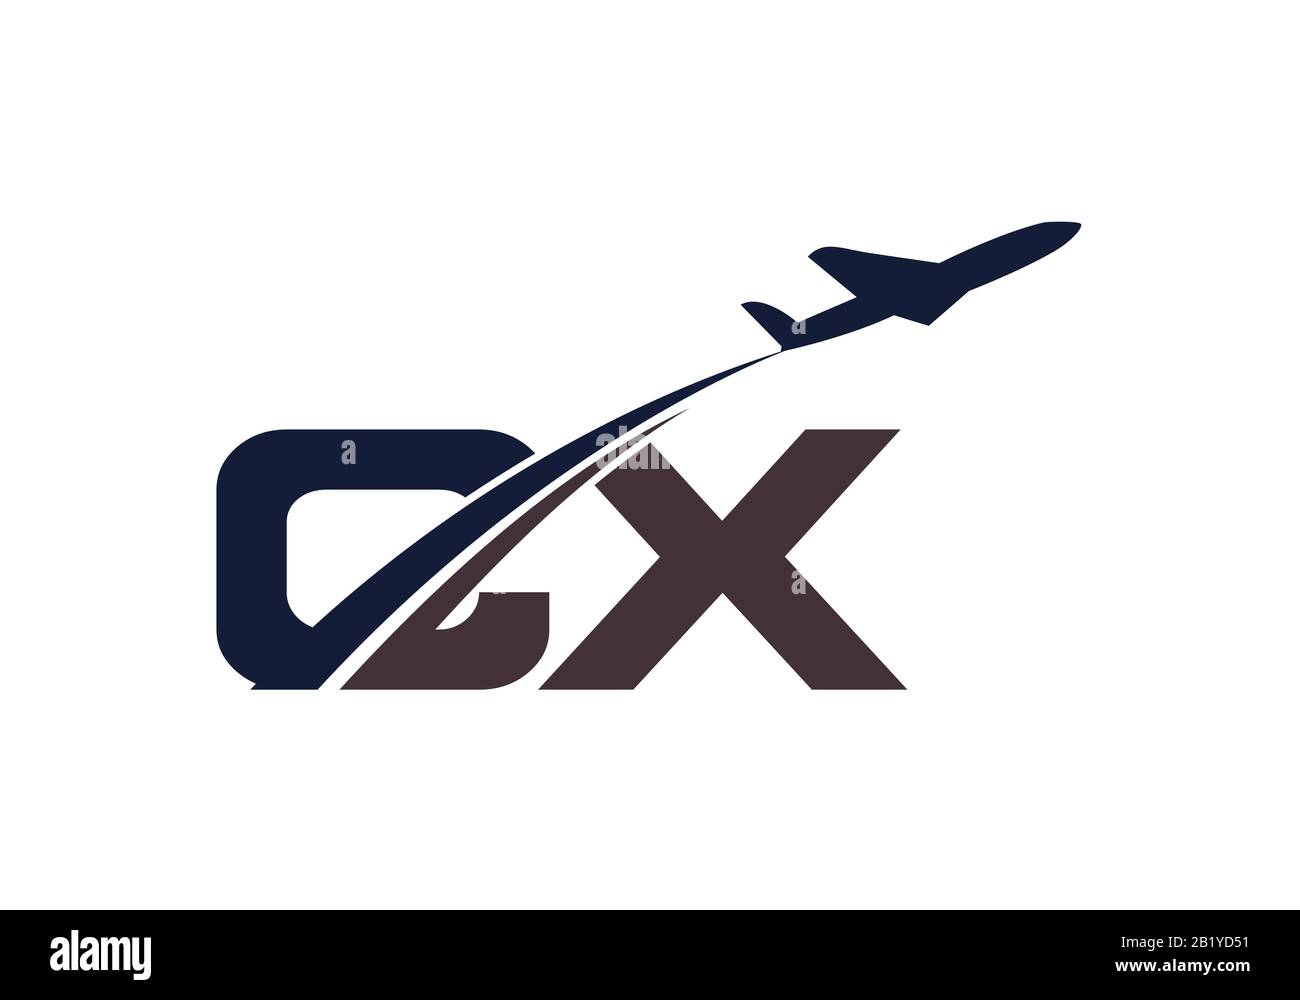 Lettera iniziale C e X con logo Aviation, modello Air, Airline, Airplane e Travel Logo. Illustrazione Vettoriale